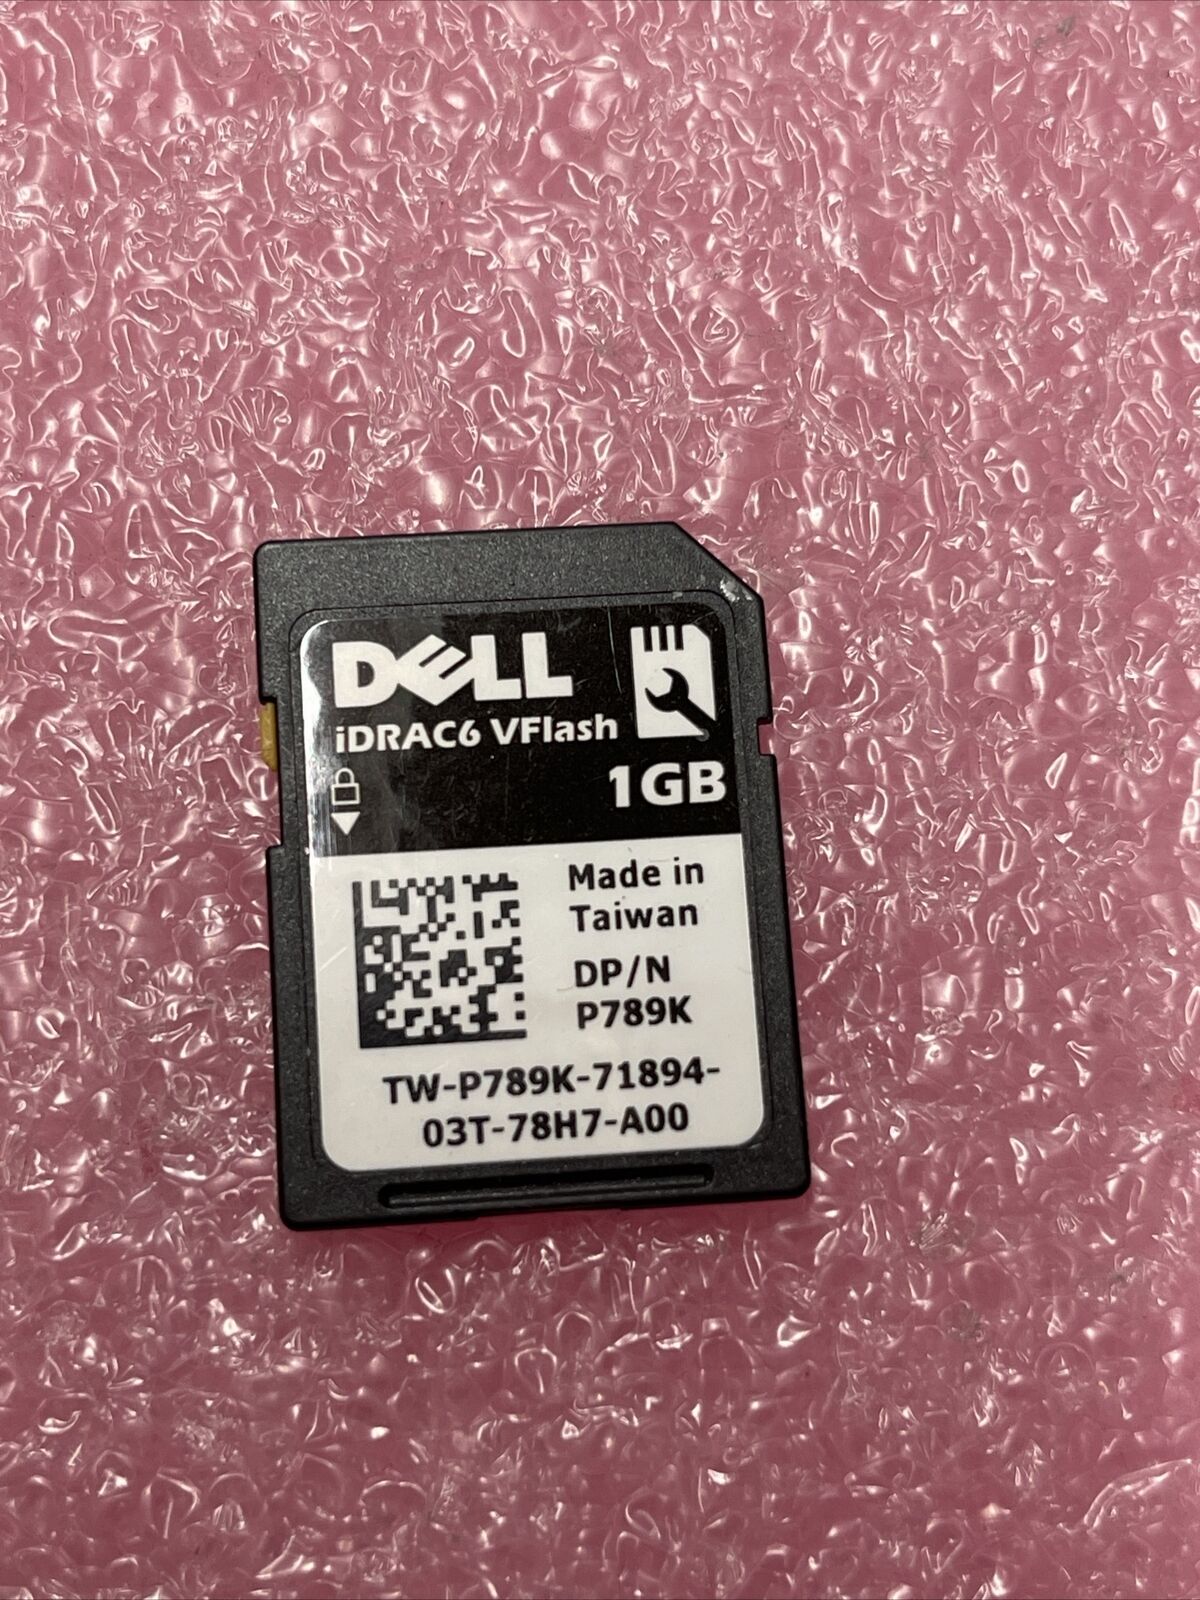 P789K 1GB IDRAC SD MEMORY CARD